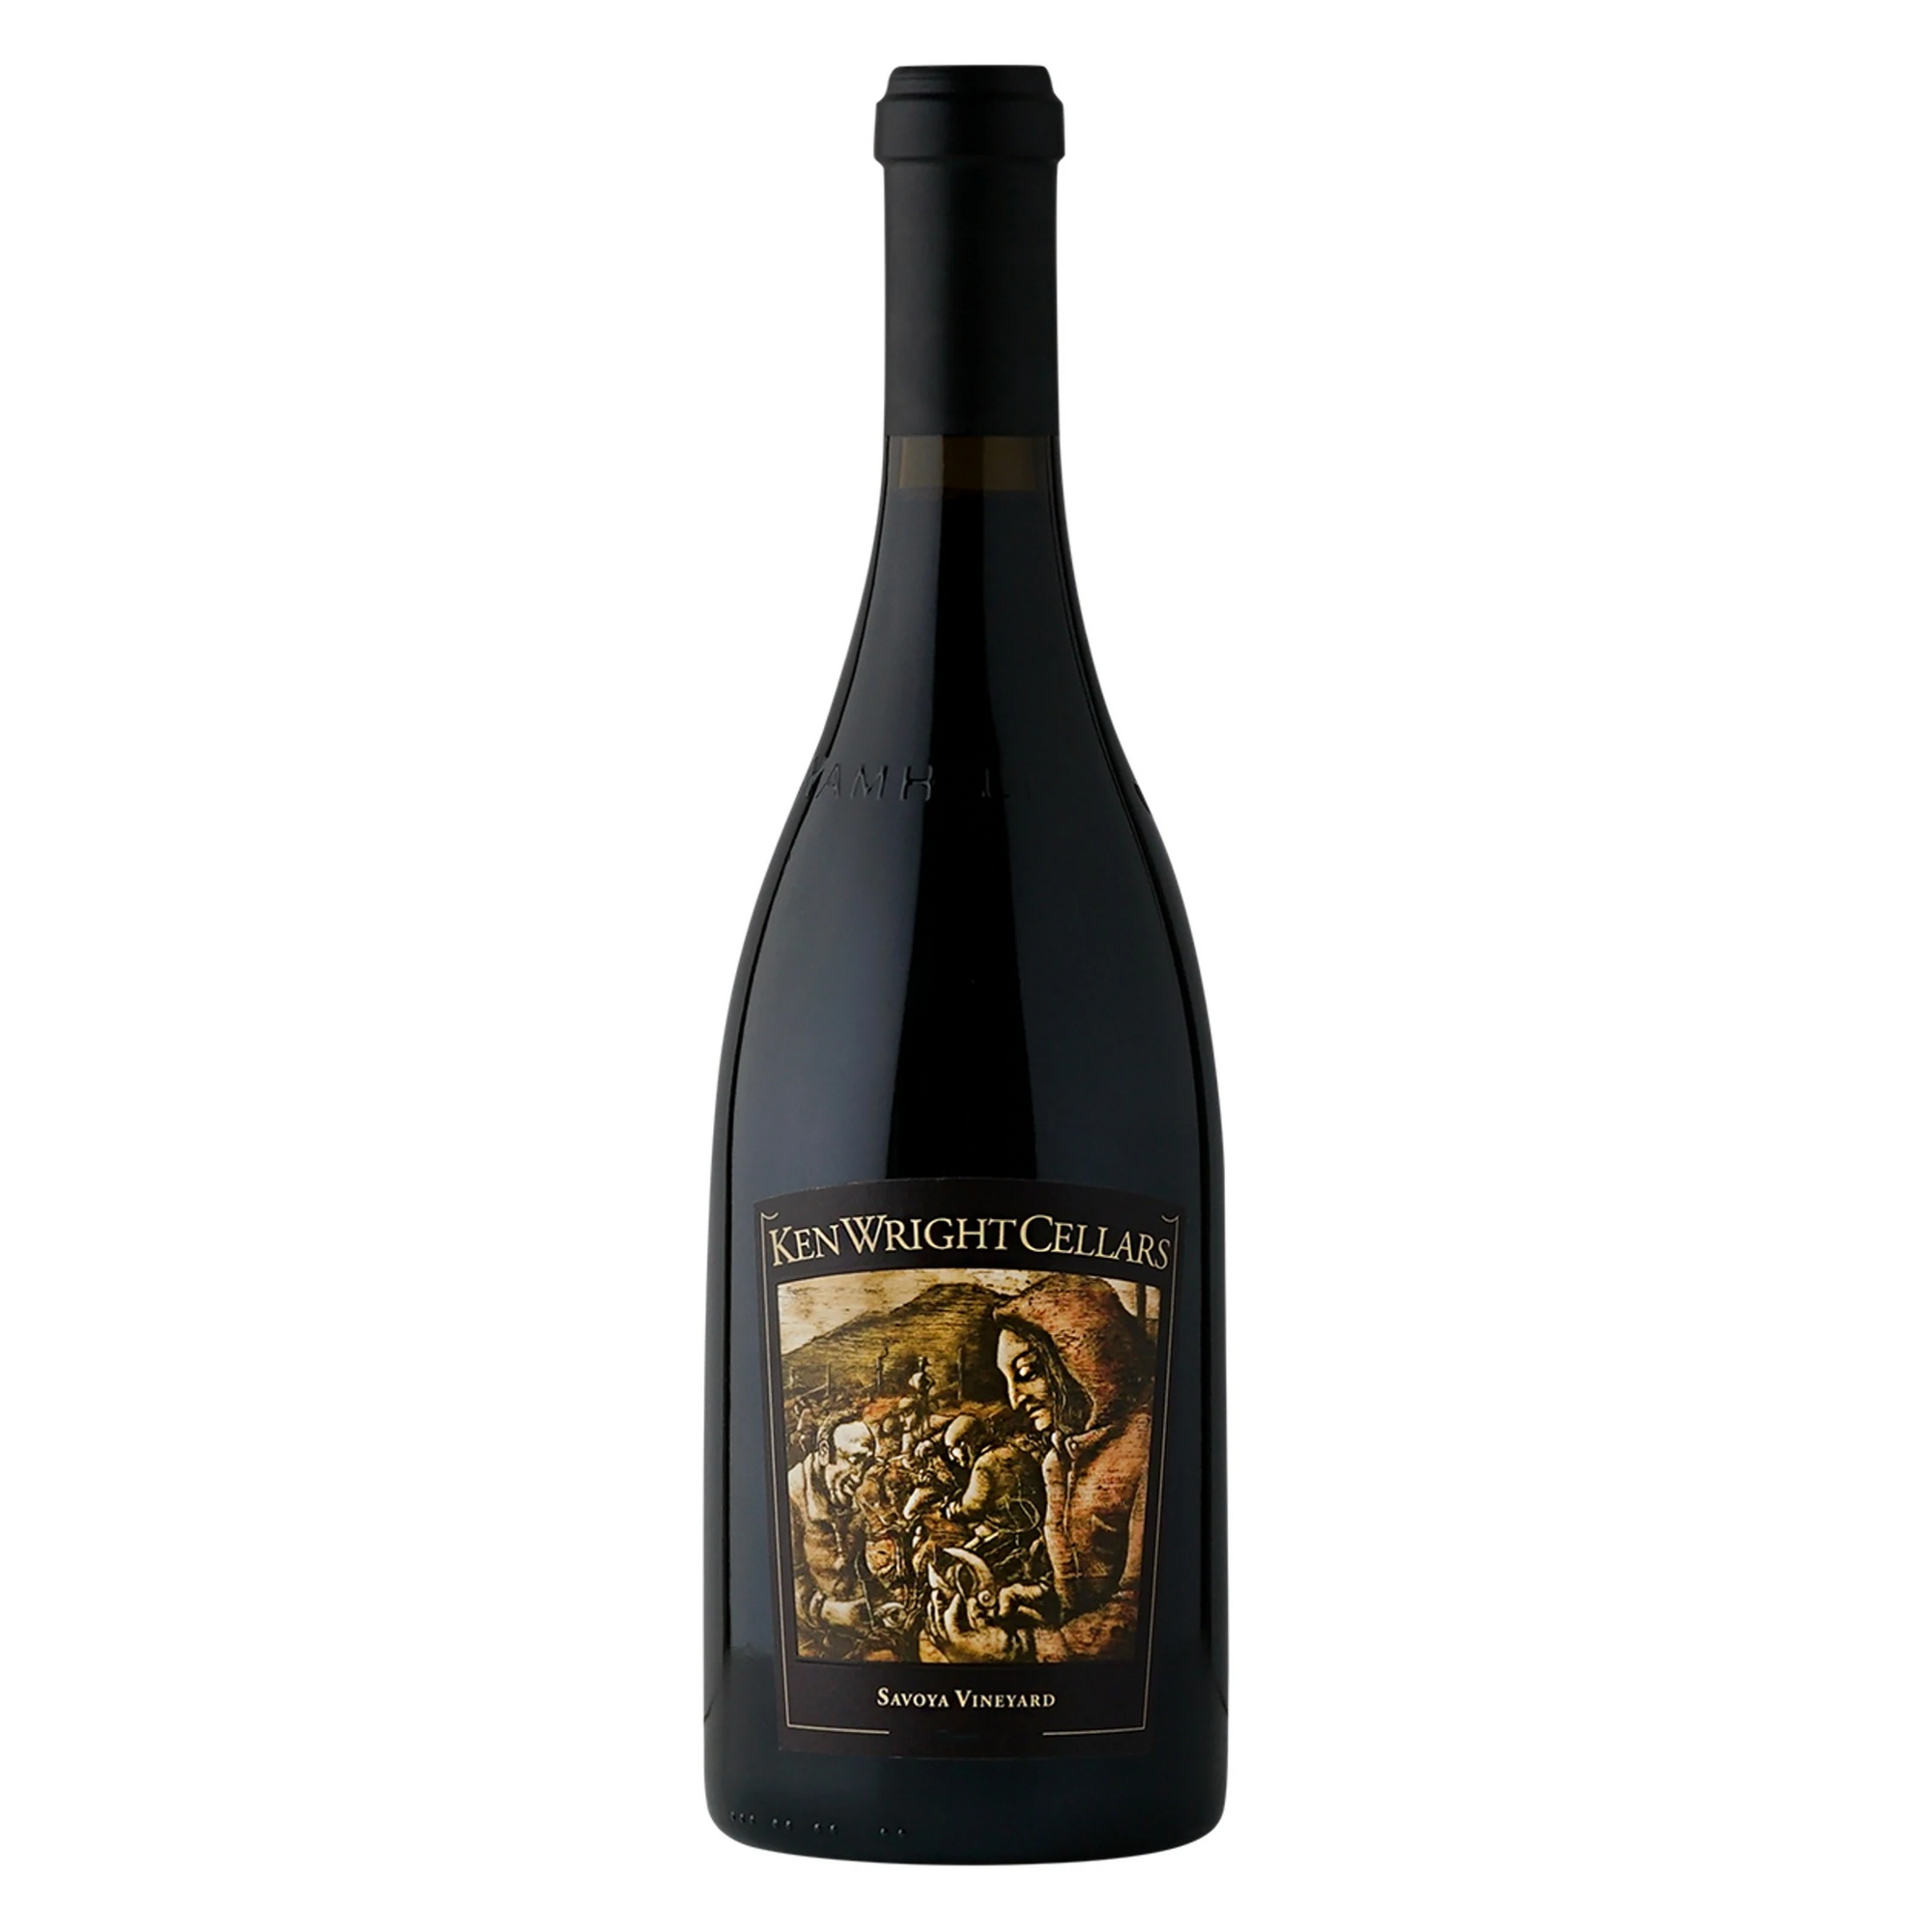 KEN WRIGHT CELLARS "Savoya Vineyard" Pinot Noir 2016